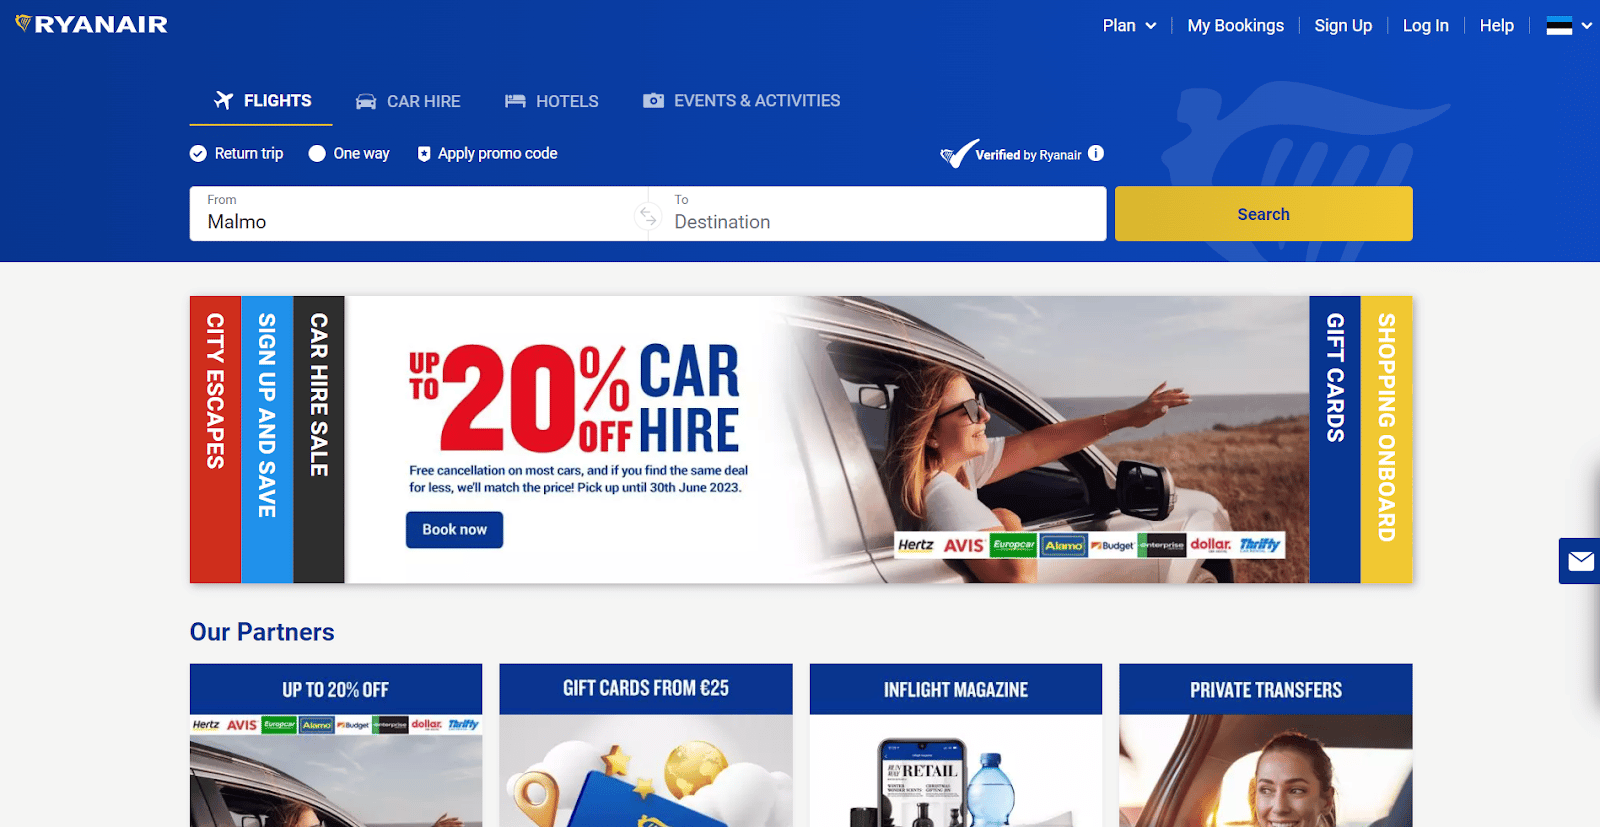 Ryanair’s adaptive website homepage